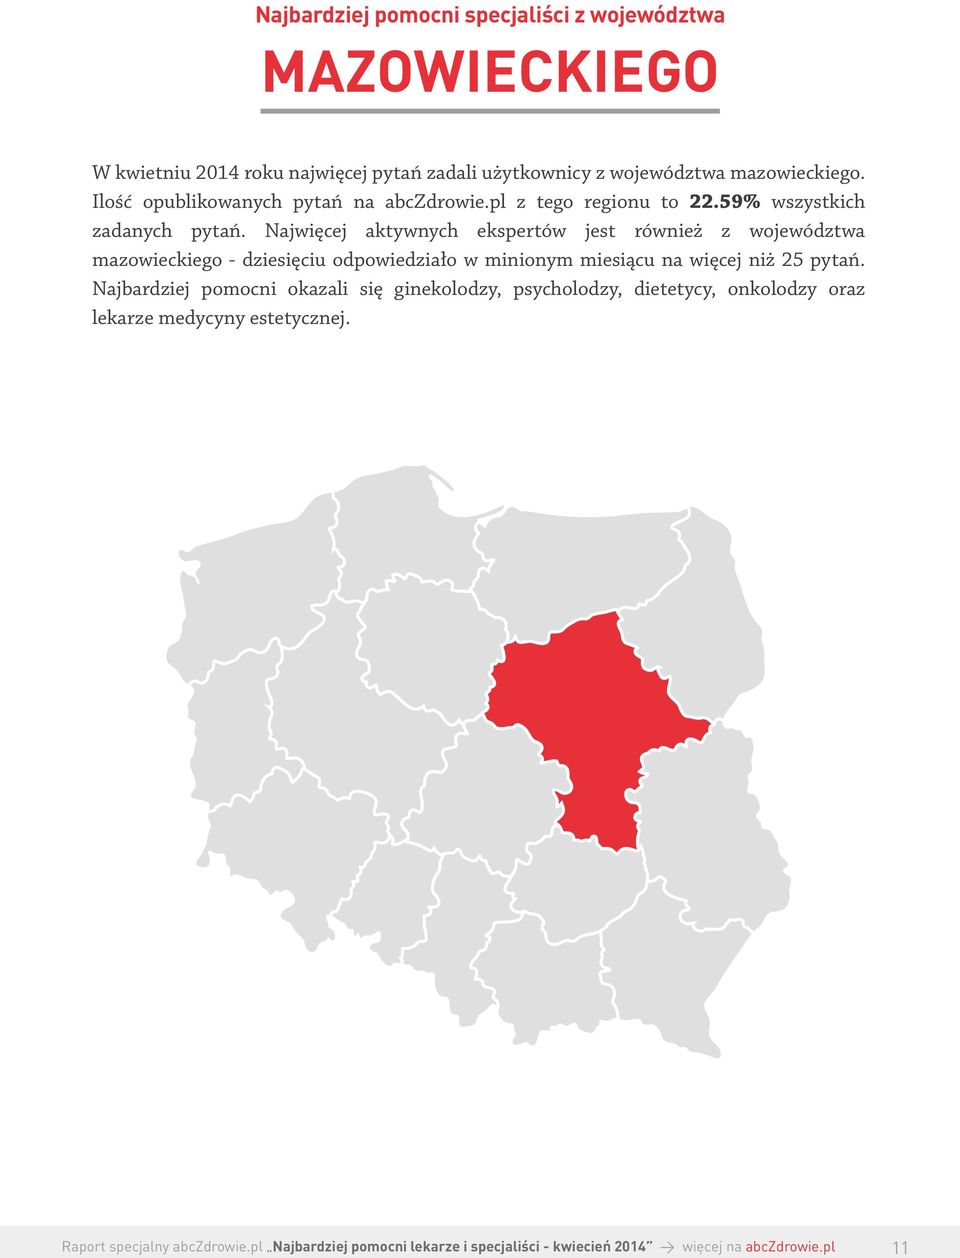 Najwięcej aktywnych ekspertów jest również z województwa mazowieckiego - dziesięciu odpowiedziało w minionym miesiącu na